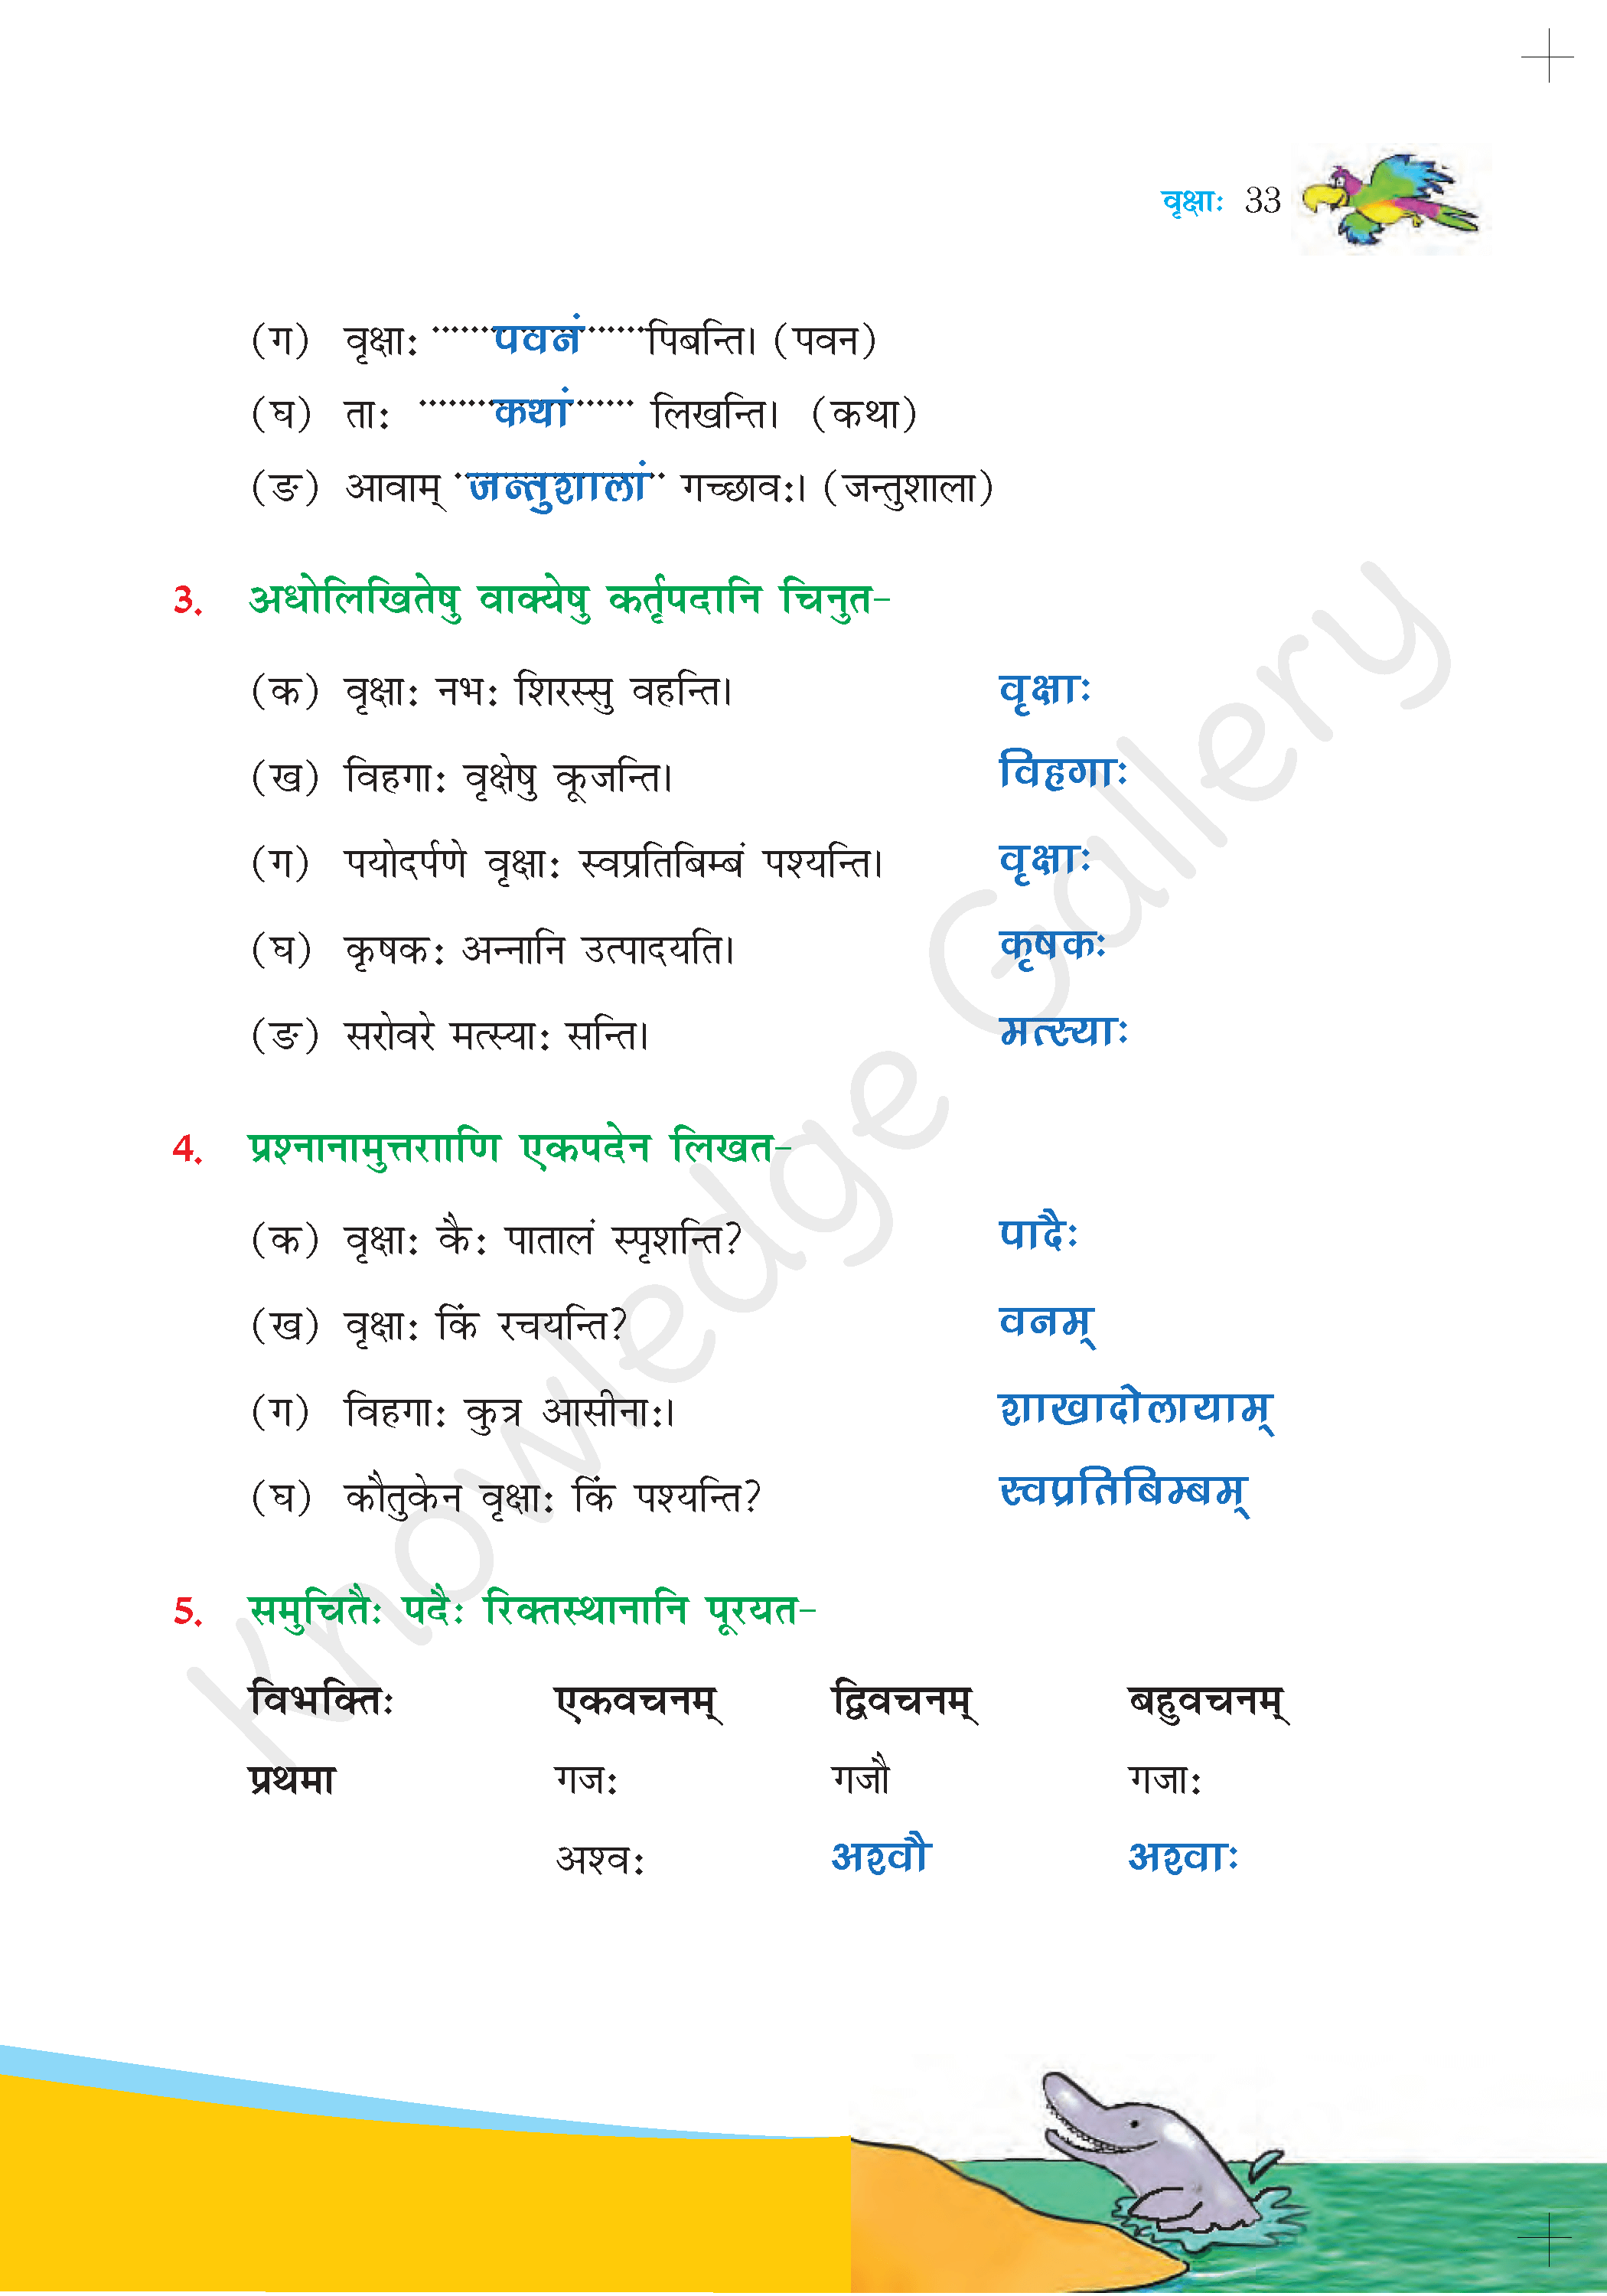 NCERT Solution For Class 6 Sanskrit Chapter 5 part 5